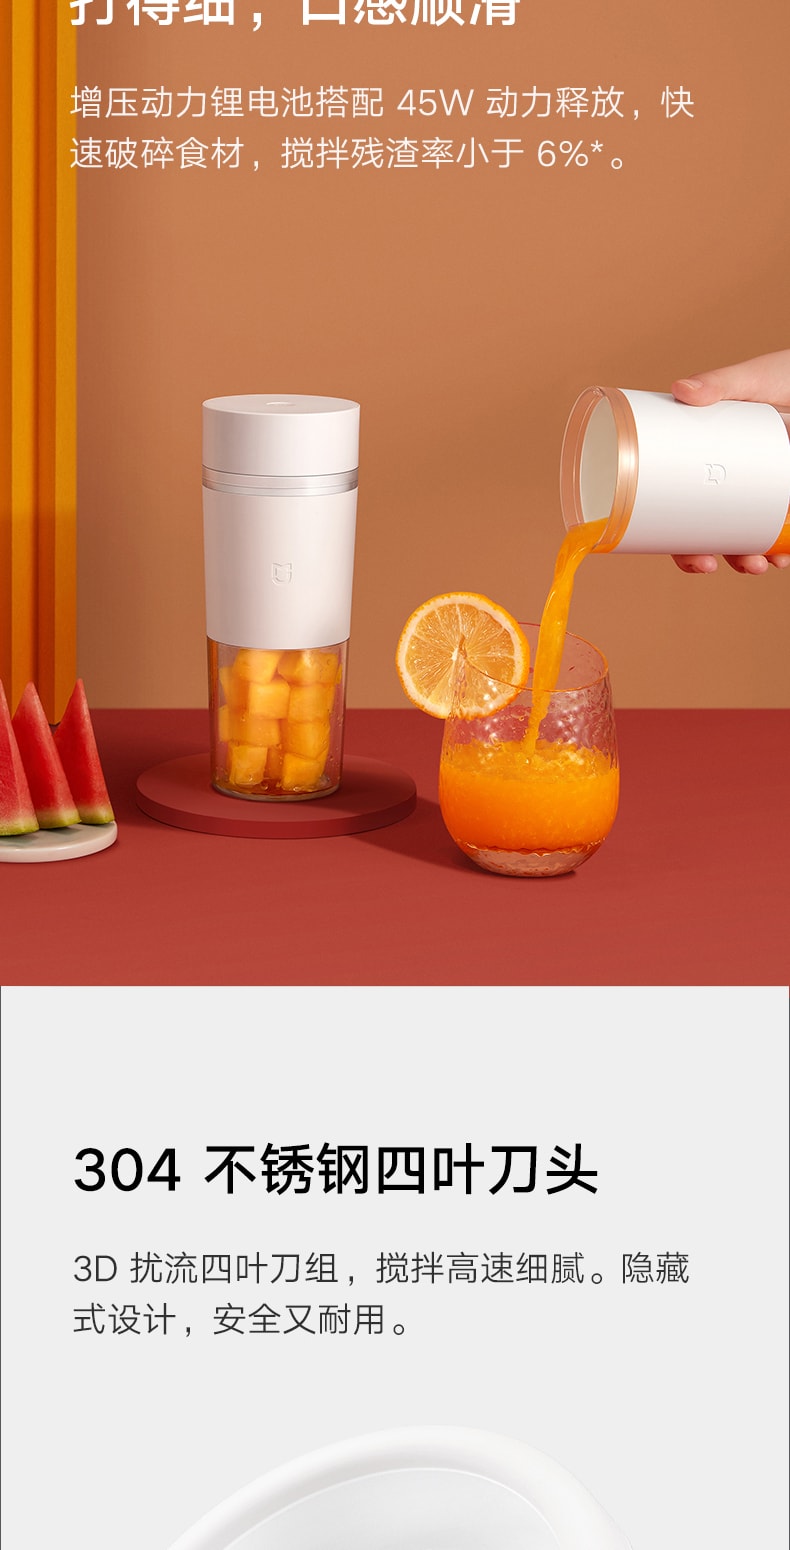 【中国直邮】小米米家随行榨汁机 果汁机 白色 轻松营养